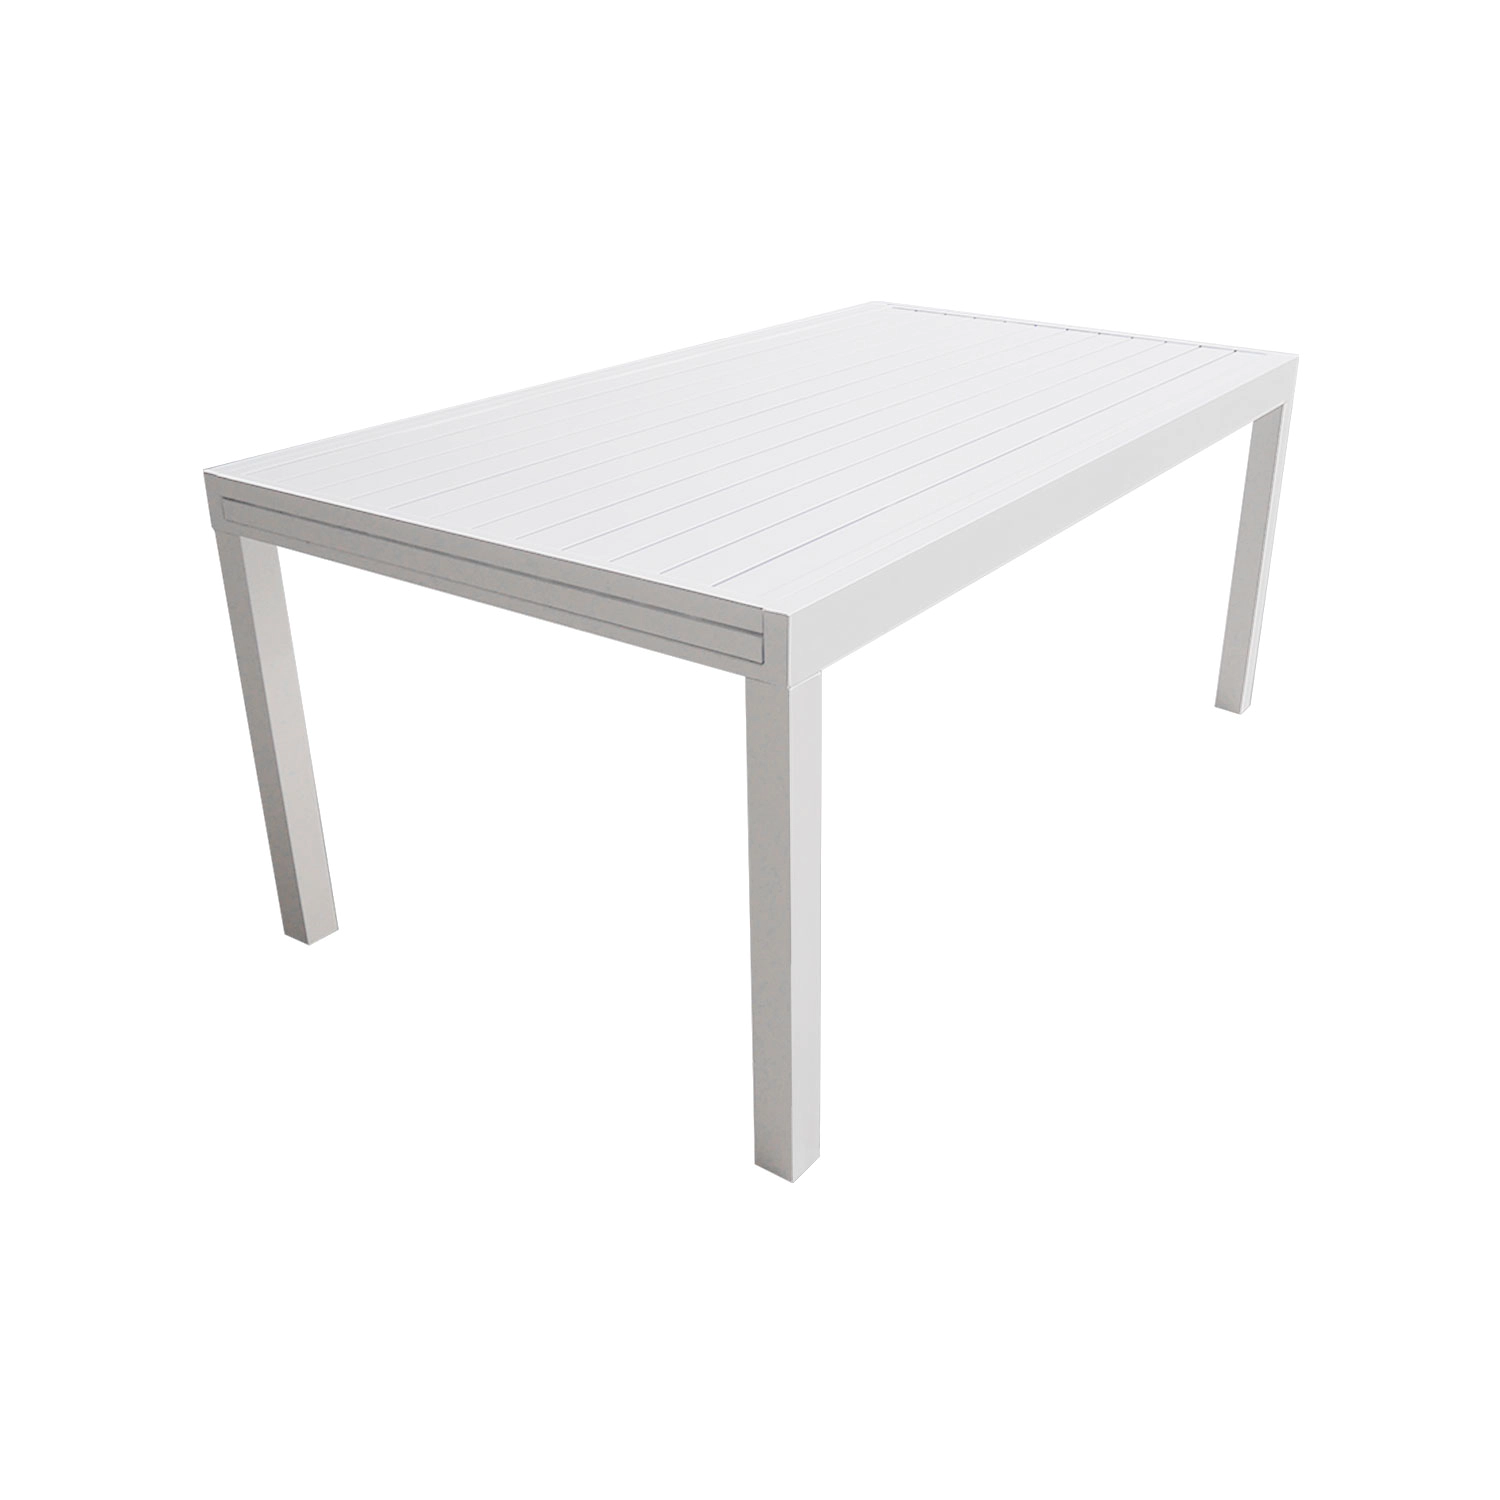 VENEZIA Set di mobili da giardino estensibili in alluminio 180/300 - bianco